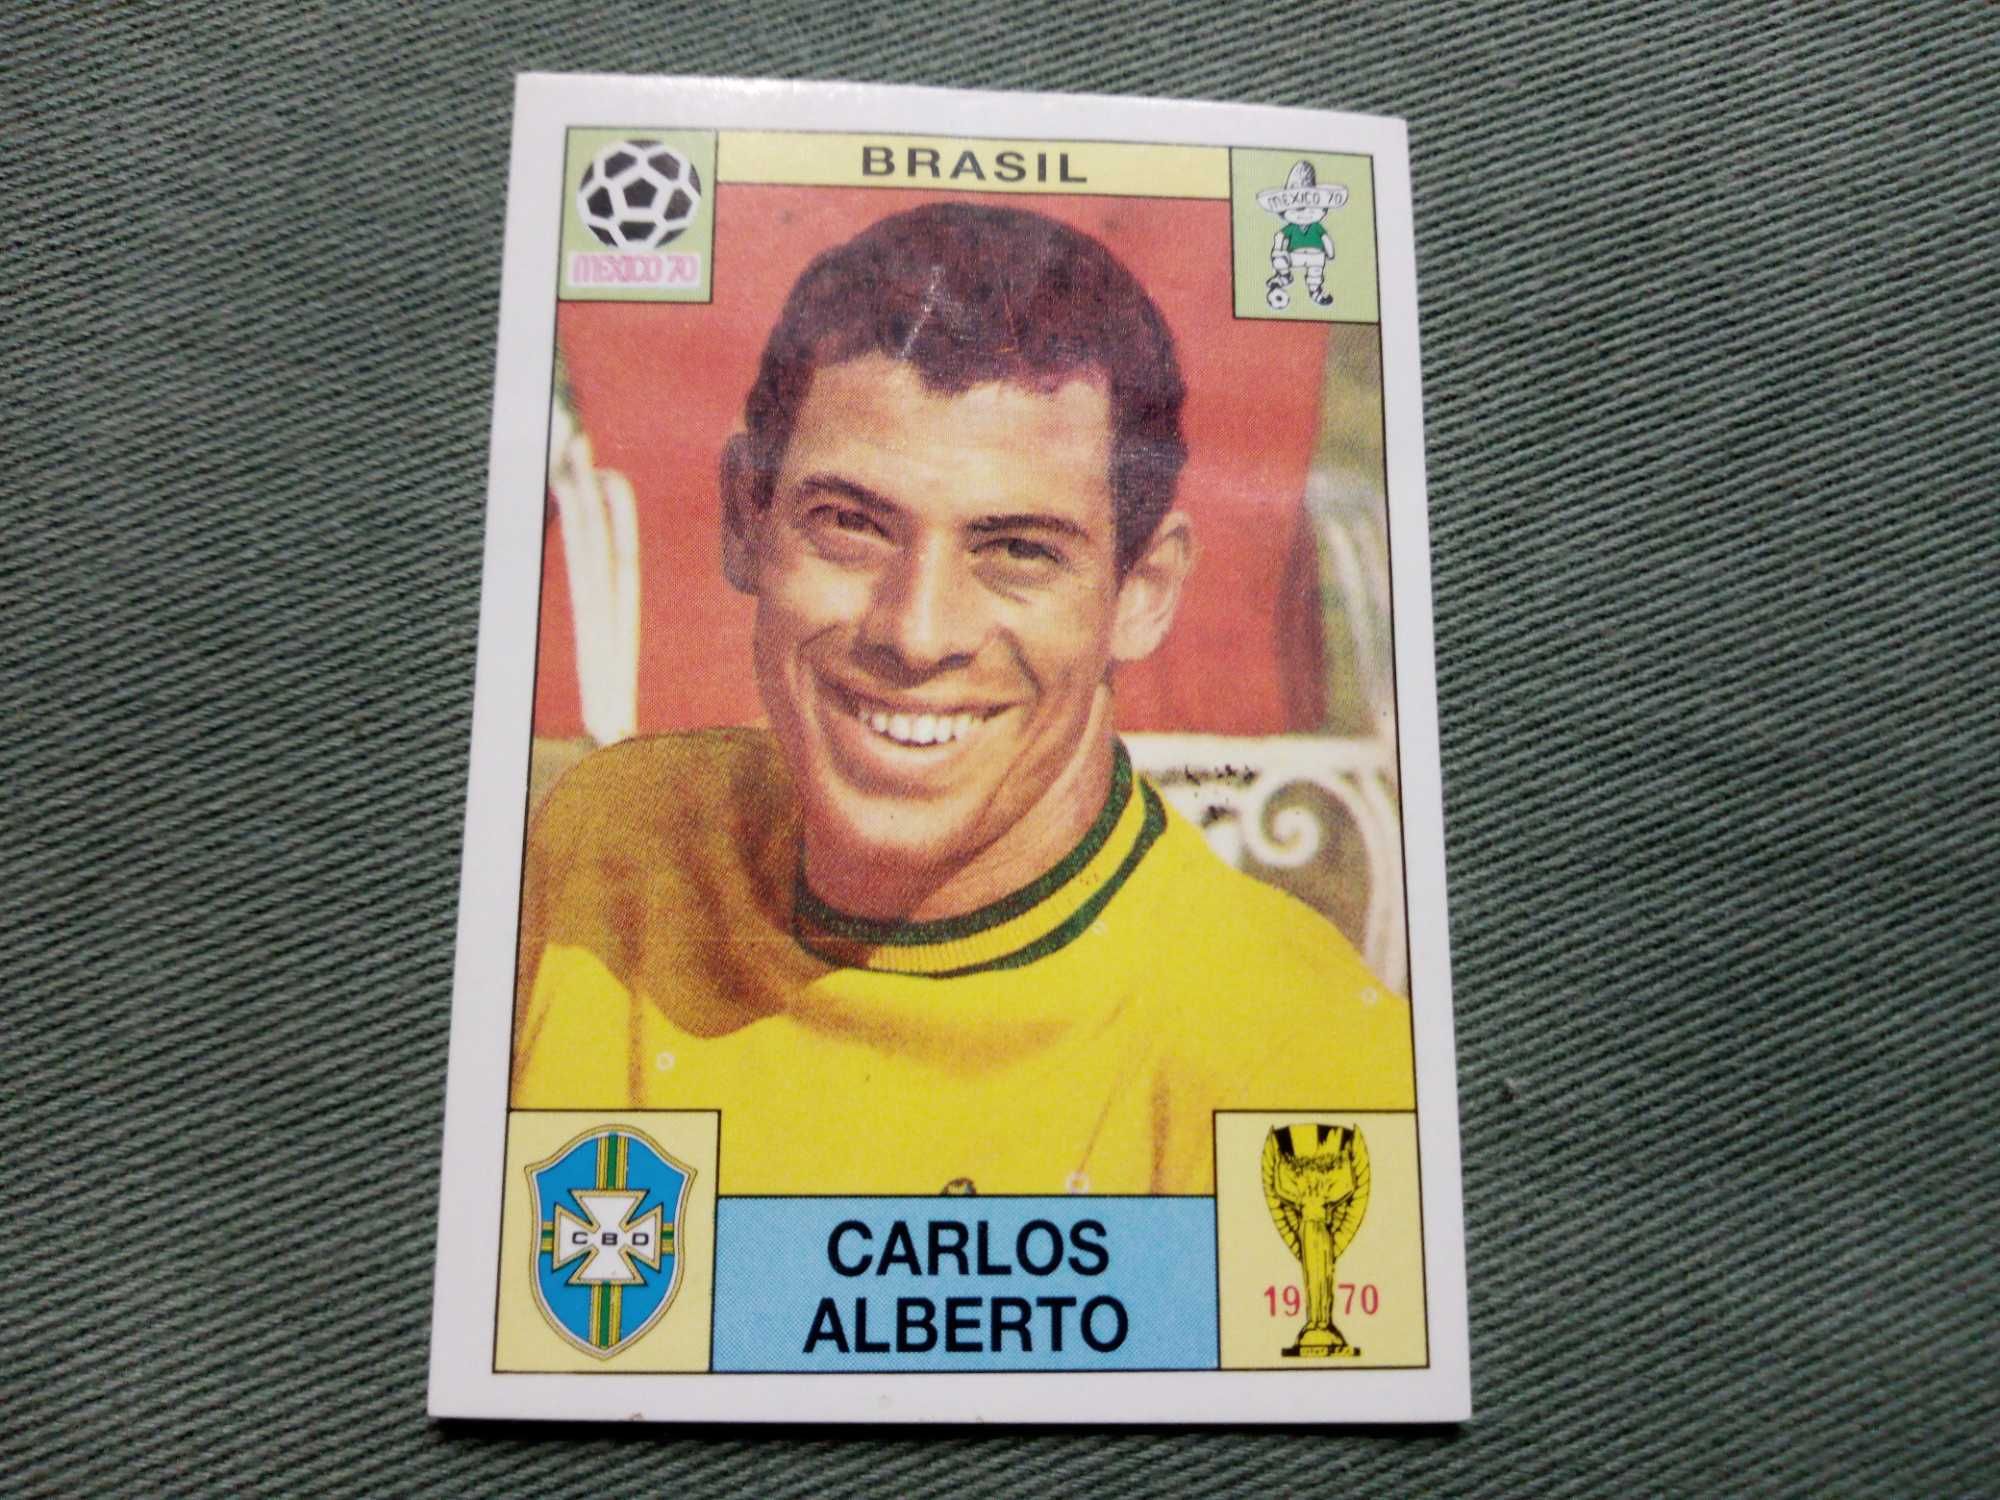 Cromo Panini World Cup Story de Carlos Alberto no Mundial 70